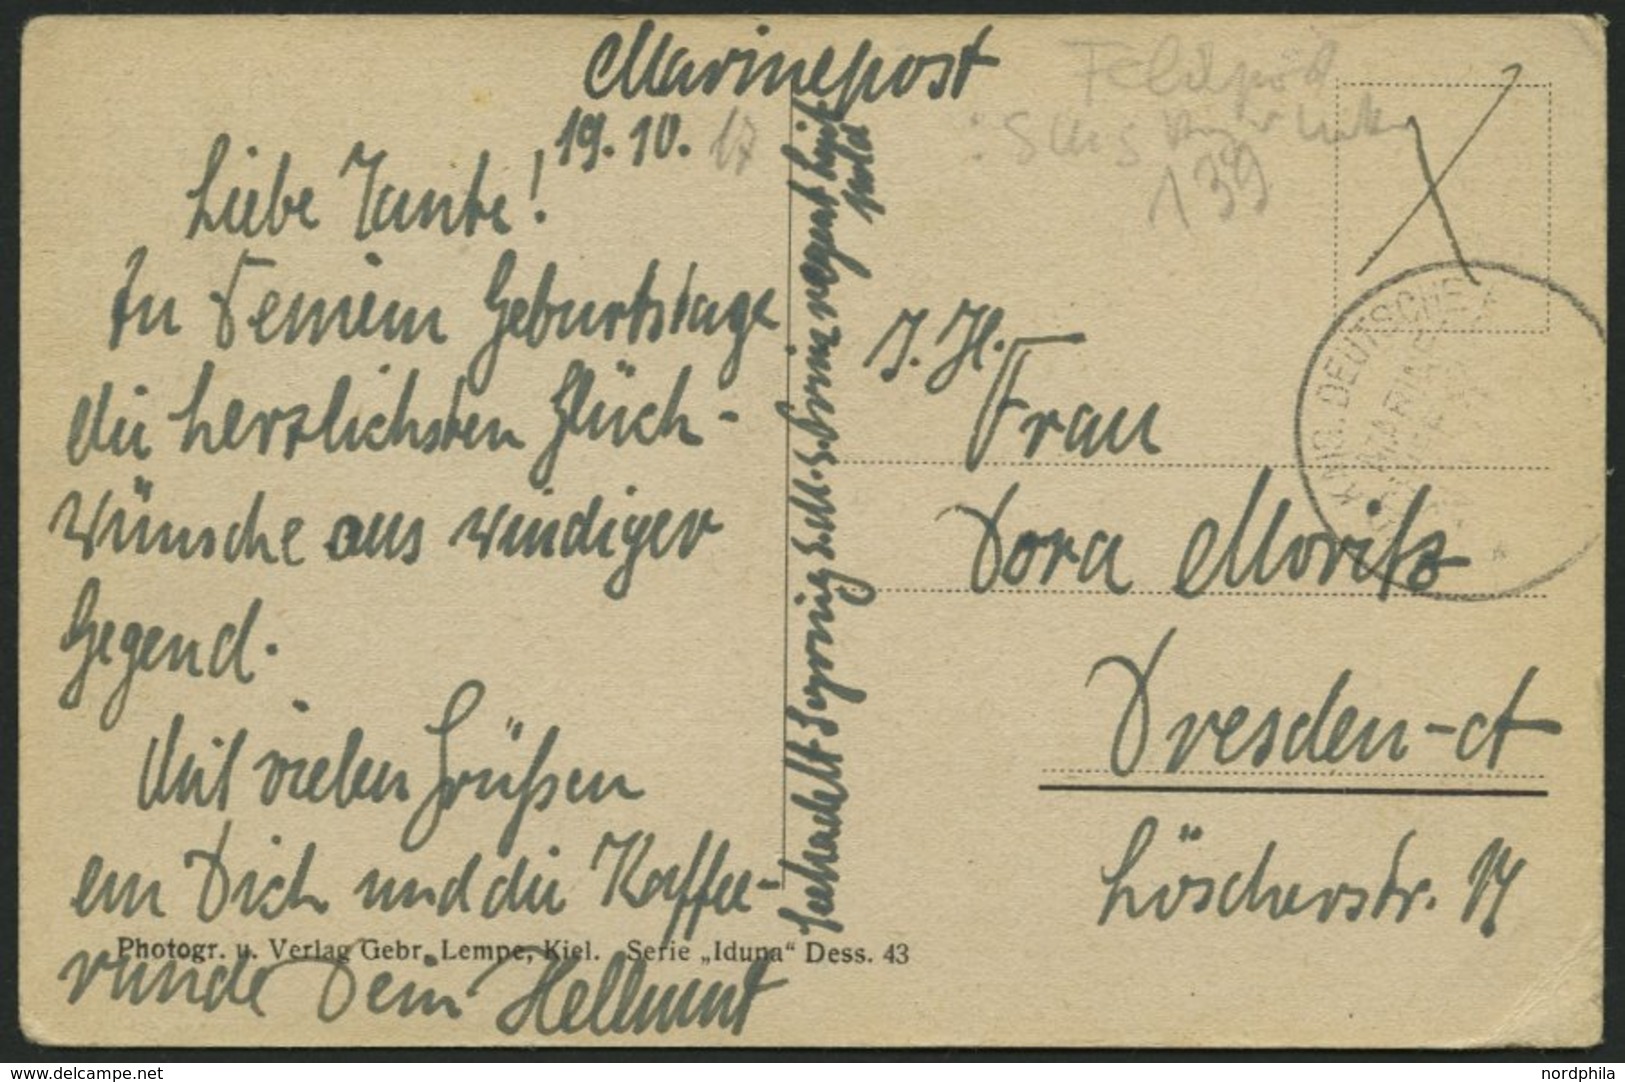 ALTE POSTKARTEN - SCHIFFE KAISERL. MARINE BIS 1918 S.M.S. Printregent Luitpold, 3 Karten, Dabei Eine Feldpostkarte - Warships